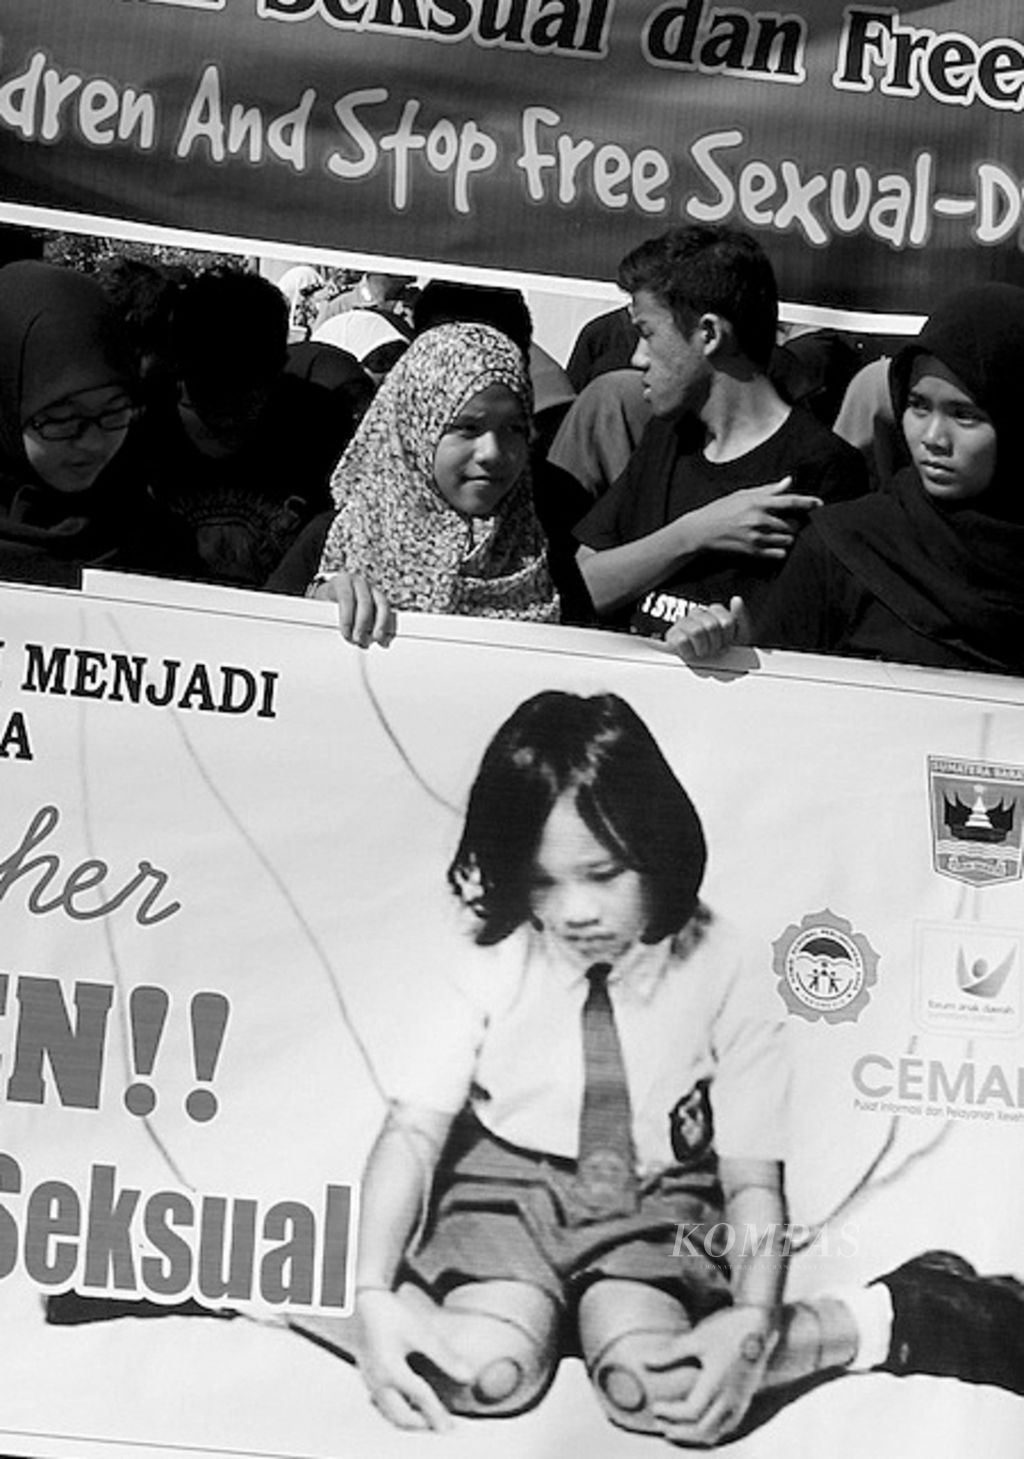 Pelajar dari berbagai wilayah di Sumatera Barat menggelar aksi solidaritas menyikapi maraknya kasus kekerasan seksual terhadap anak di Indonesia di kawasan Jalan Sudirman Kota Padang, Minggu (25/5). Lewat aksinya, mereka mengajak warga untuk ambil bagian dalam upaya perlindungan terhadap anak-anak dari tindakan asusila.